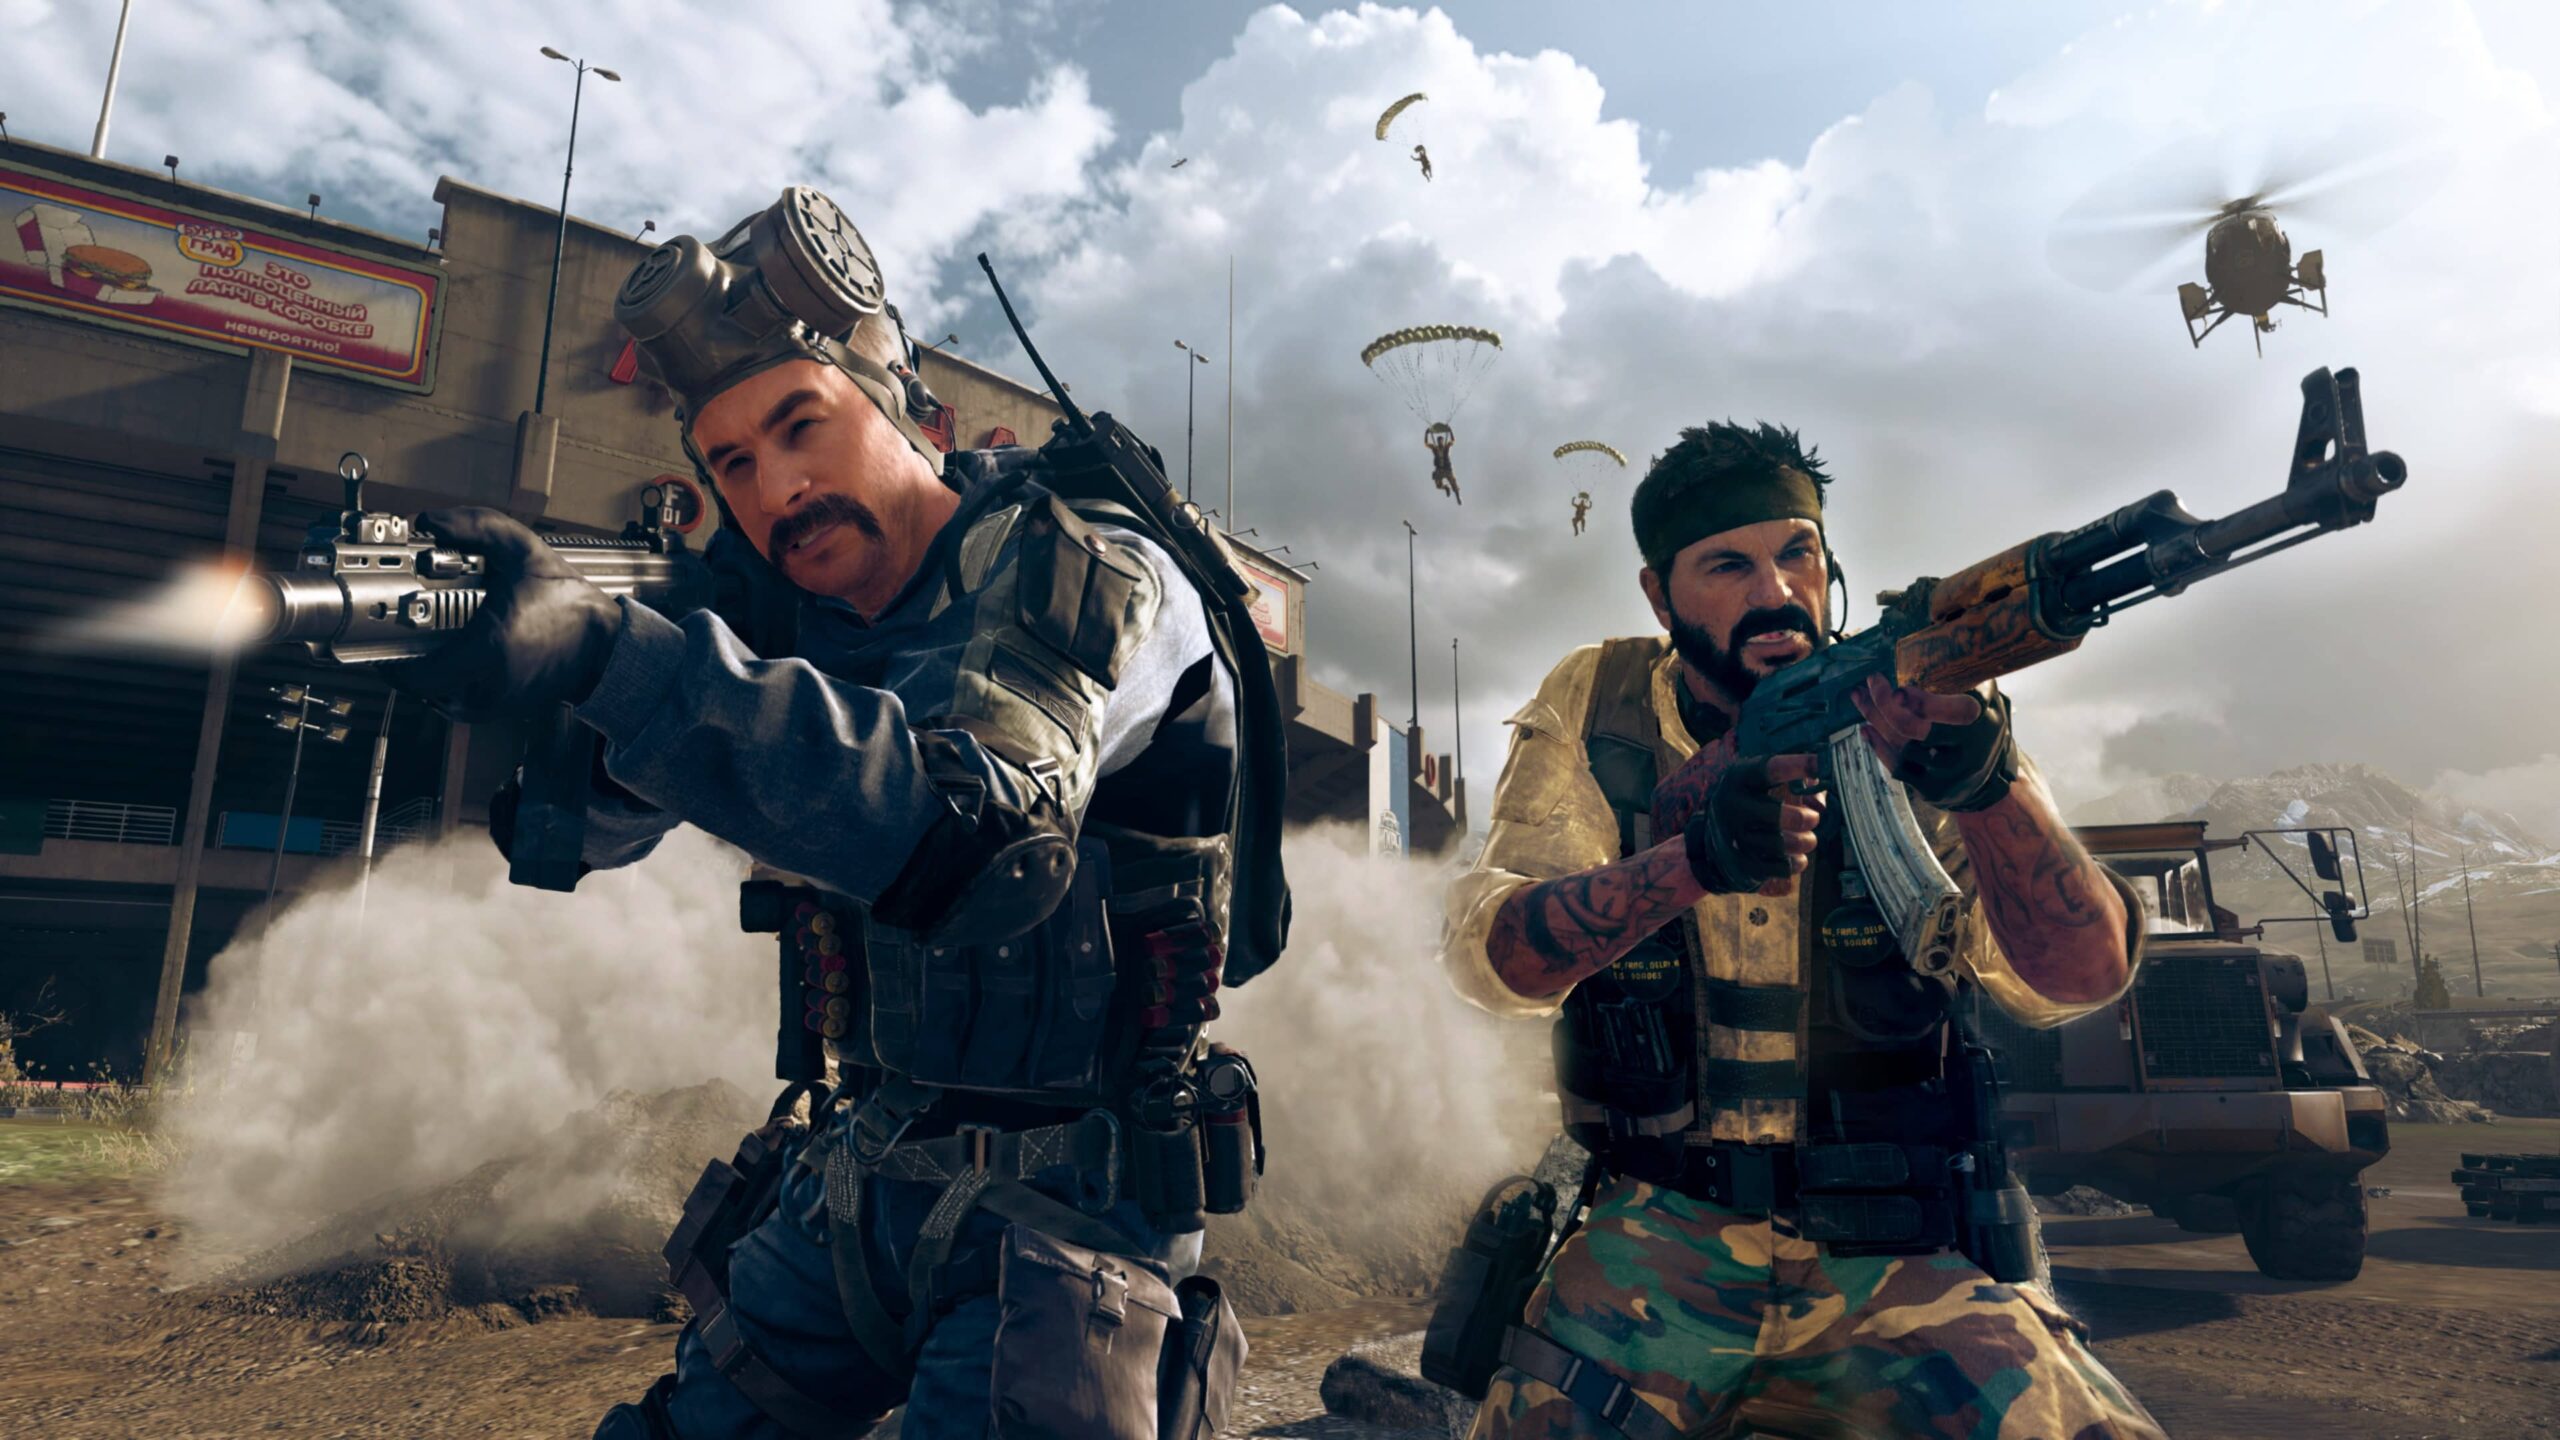 Разработчики Call of Duty: Warzone выпустили новый античит «Ricohet», который делает игроков невидимыми для читеров